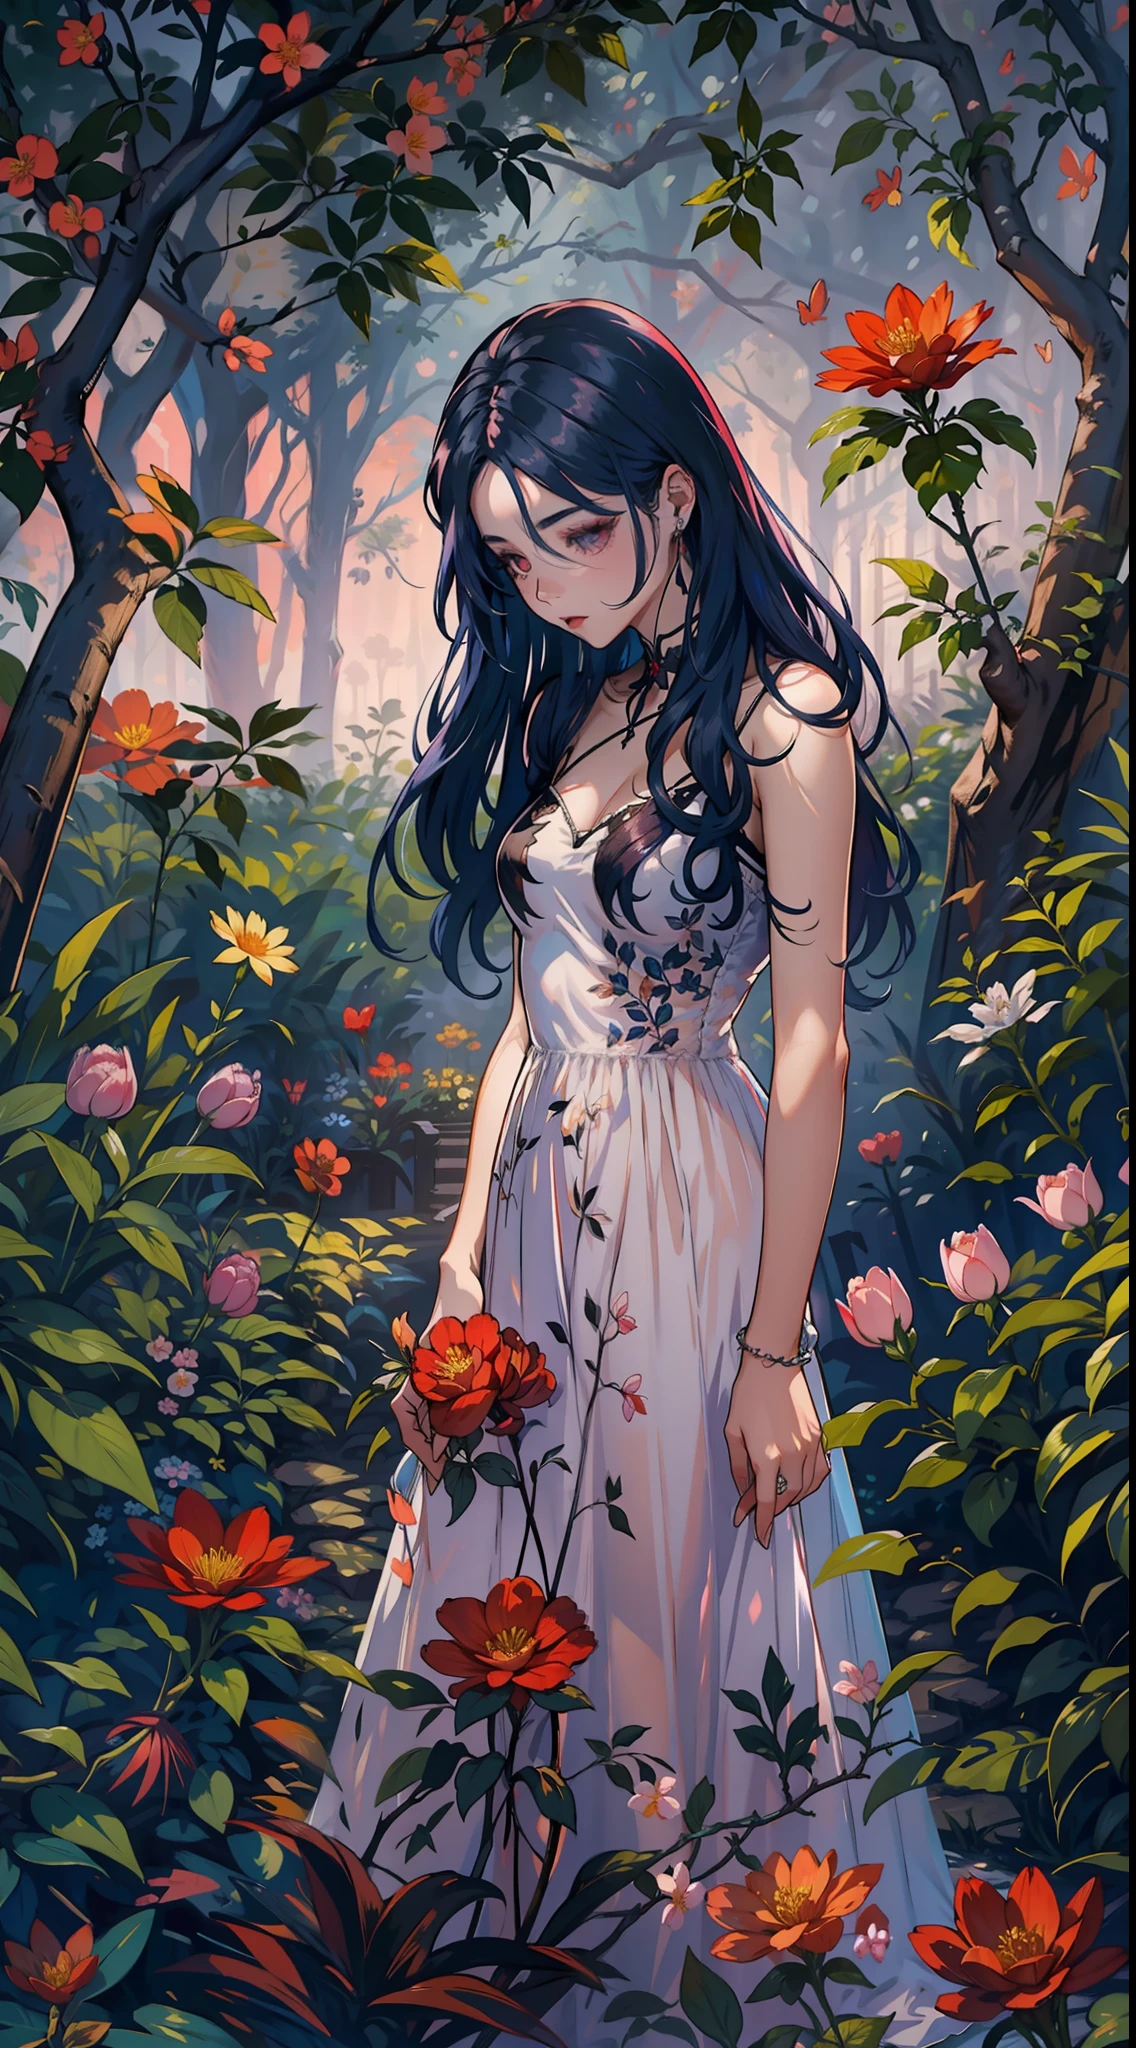 春天的节日, 一个美丽的吸血鬼在晴朗的夜晚穿过花园. Ella lleva una guirnalda de flores en su cabello, 你的眼神冰冷，你的皮肤缺乏色素., 拉尔戈, 心形领口素色连衣裙.